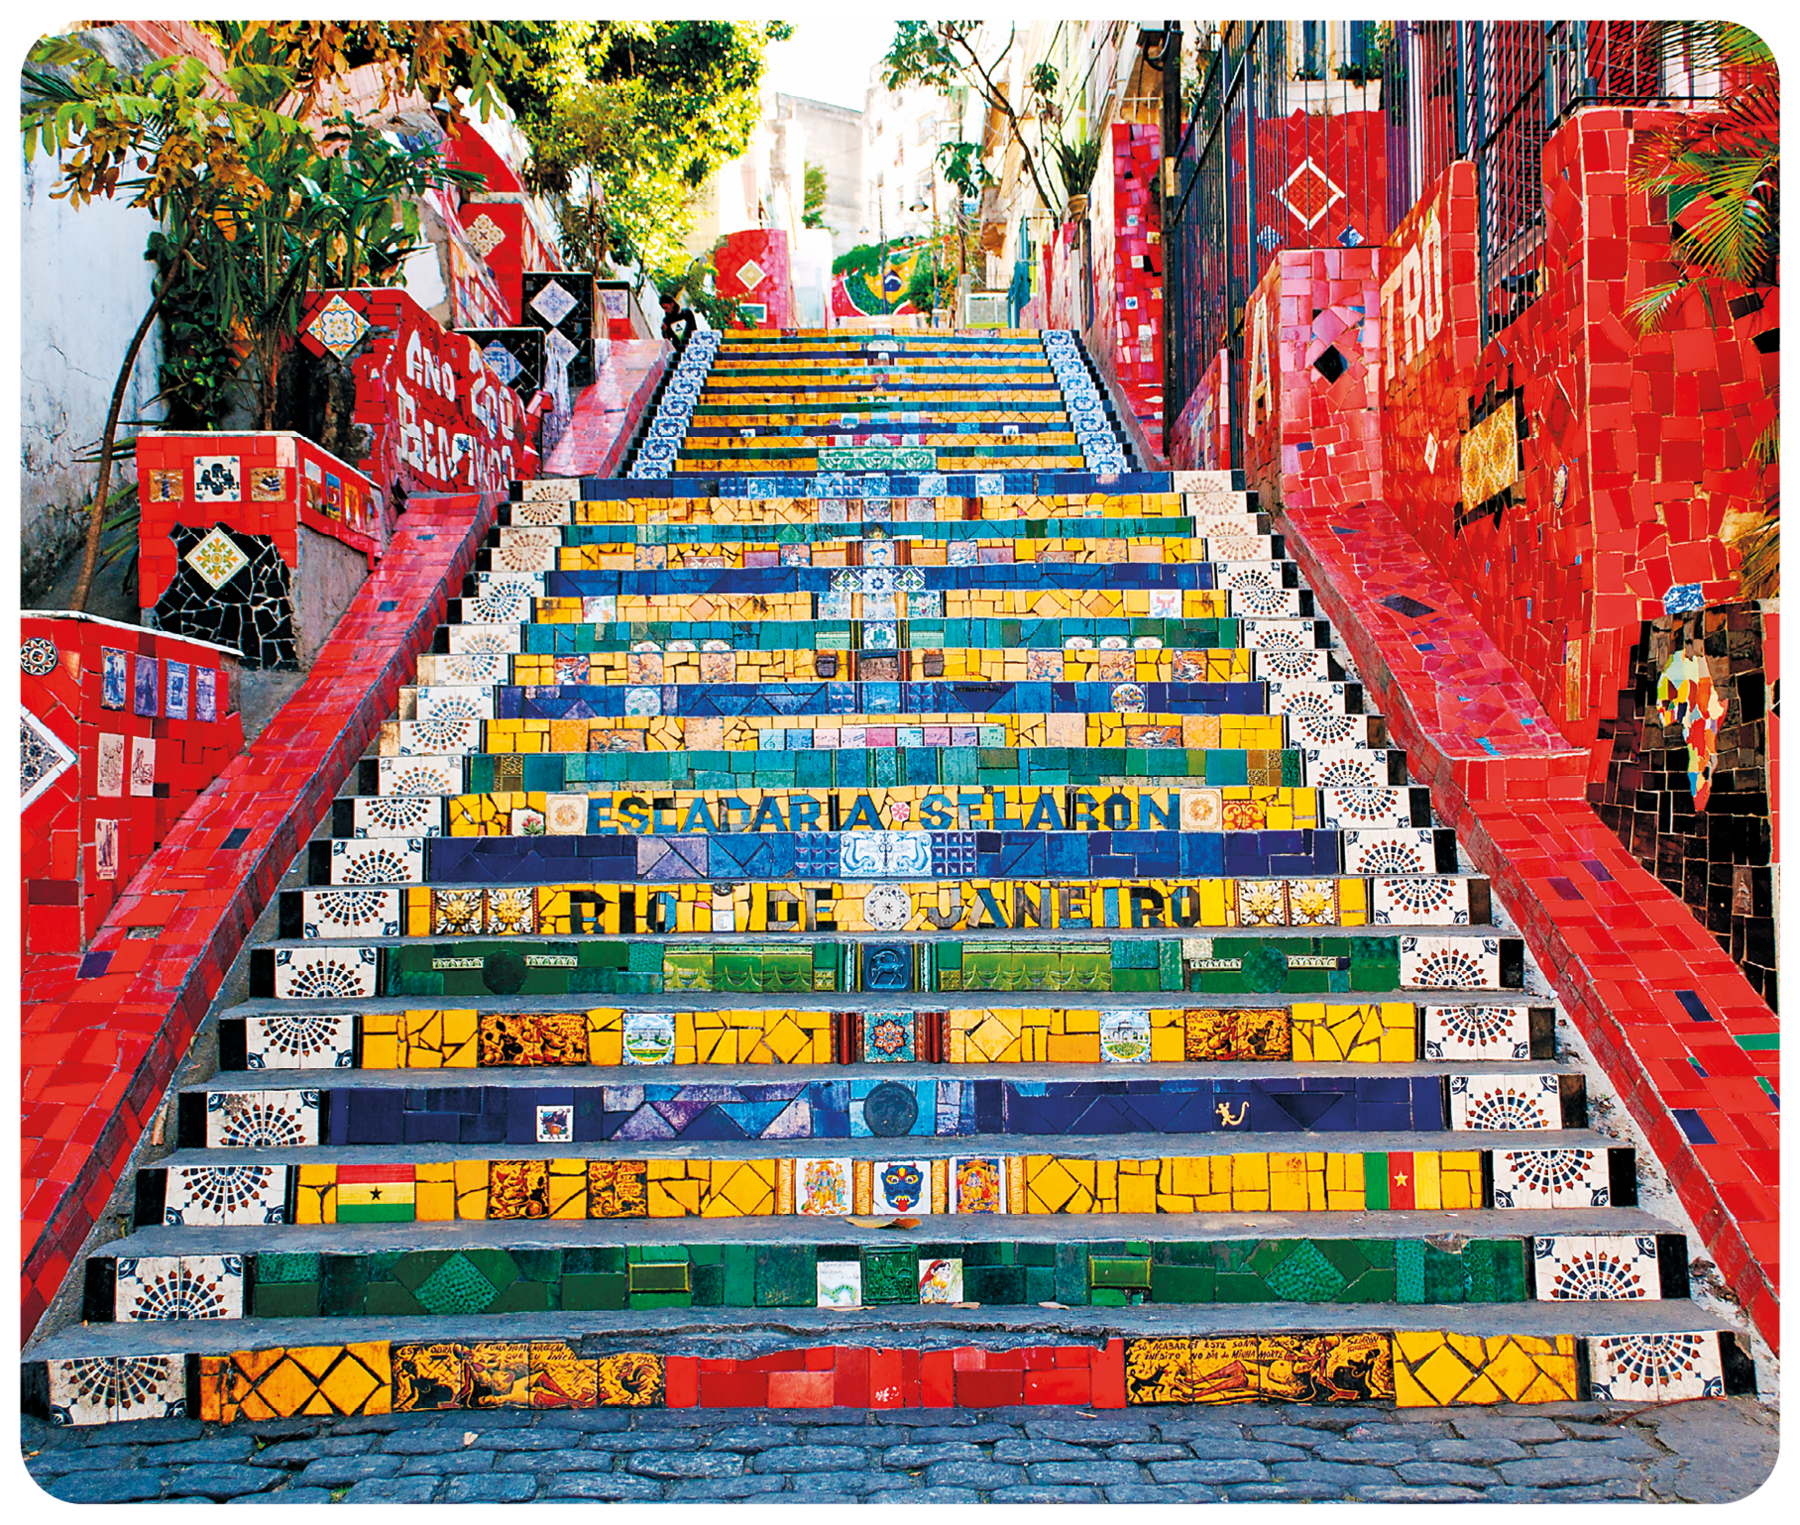 Fotografia. Plano aberto de uma escadaria com degraus compostos de ladrilhos coloridos, em tons de amarelo, azul, verde e branco e laterais com ladrilhos avermelhados formando uma composição de mosaico. Nos degraus centrais, está escrito: ESCADARIA SELARON. RIO DE JANEIRO.